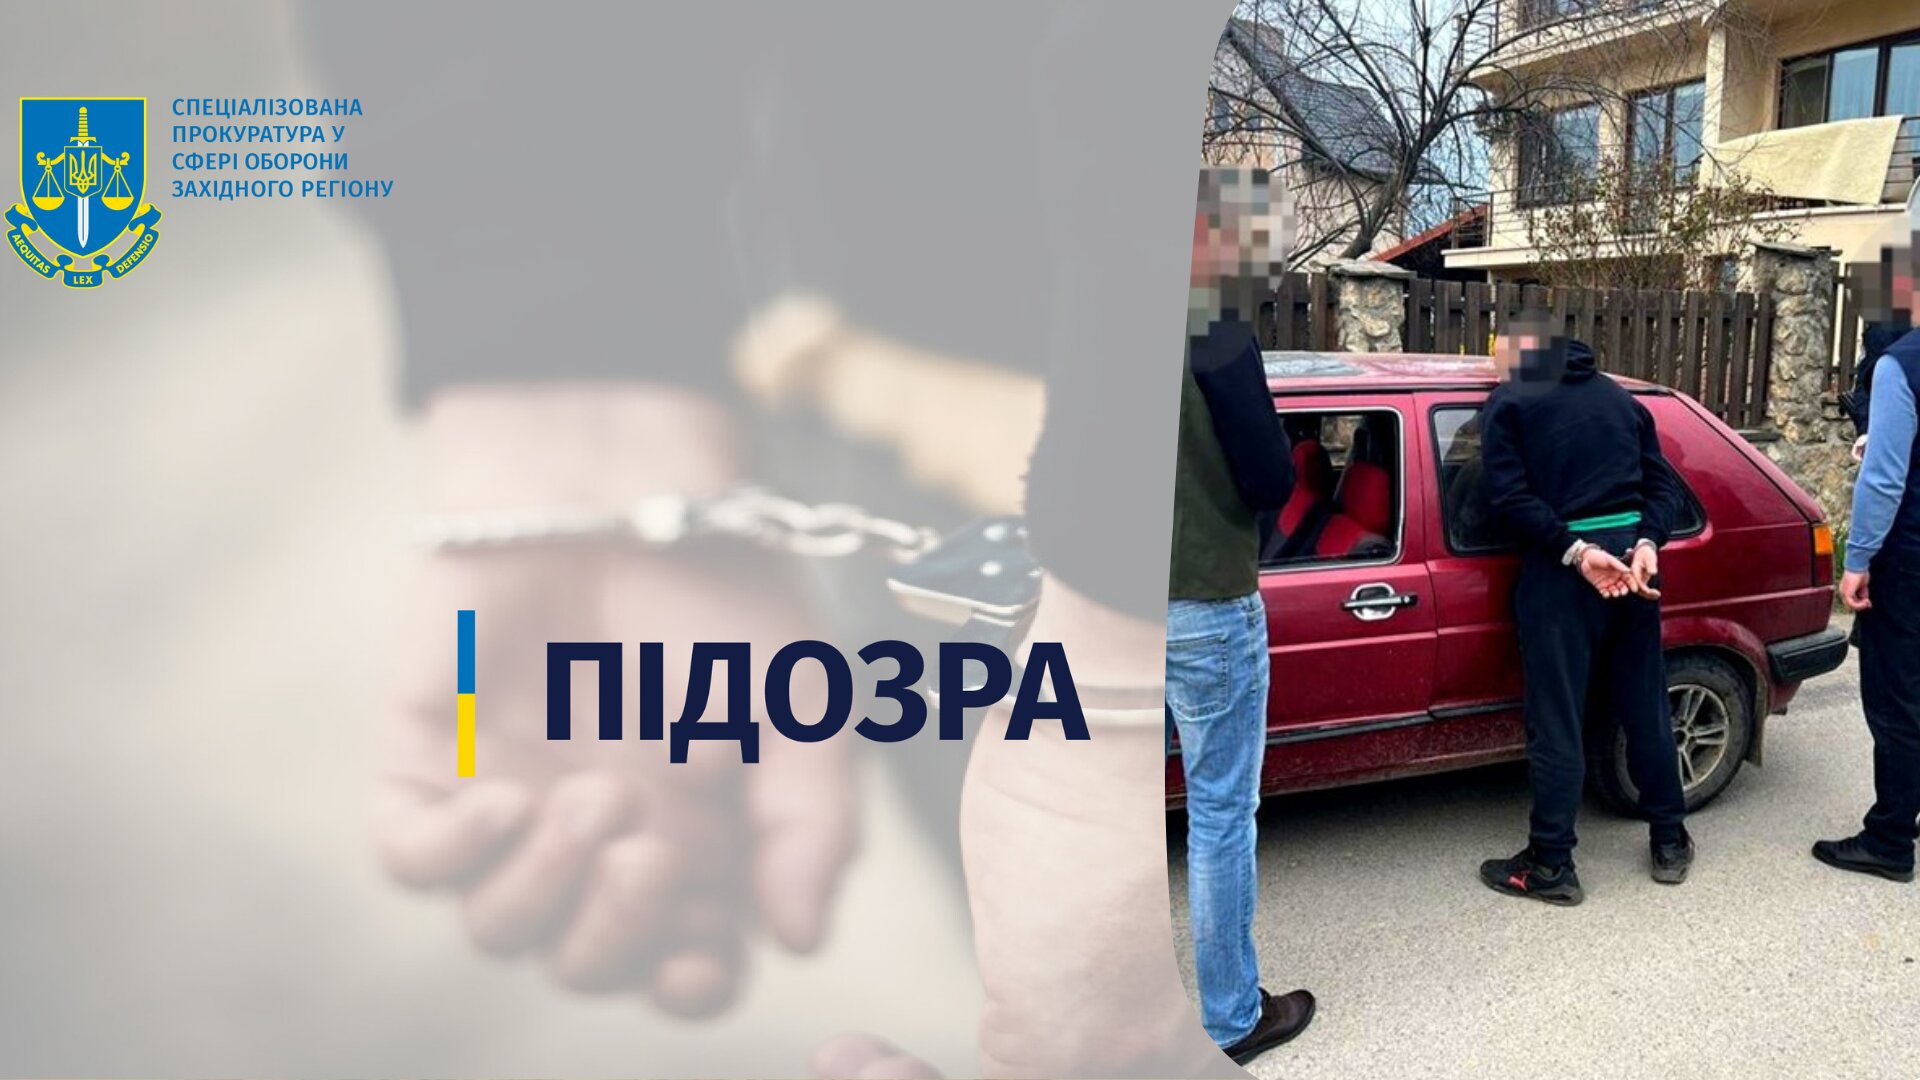 За даними слідства, 36-річний солдат торгував «метамфетаміном» та «канабісом», який розповсюджував серед місцевого населення Ужгородського району.